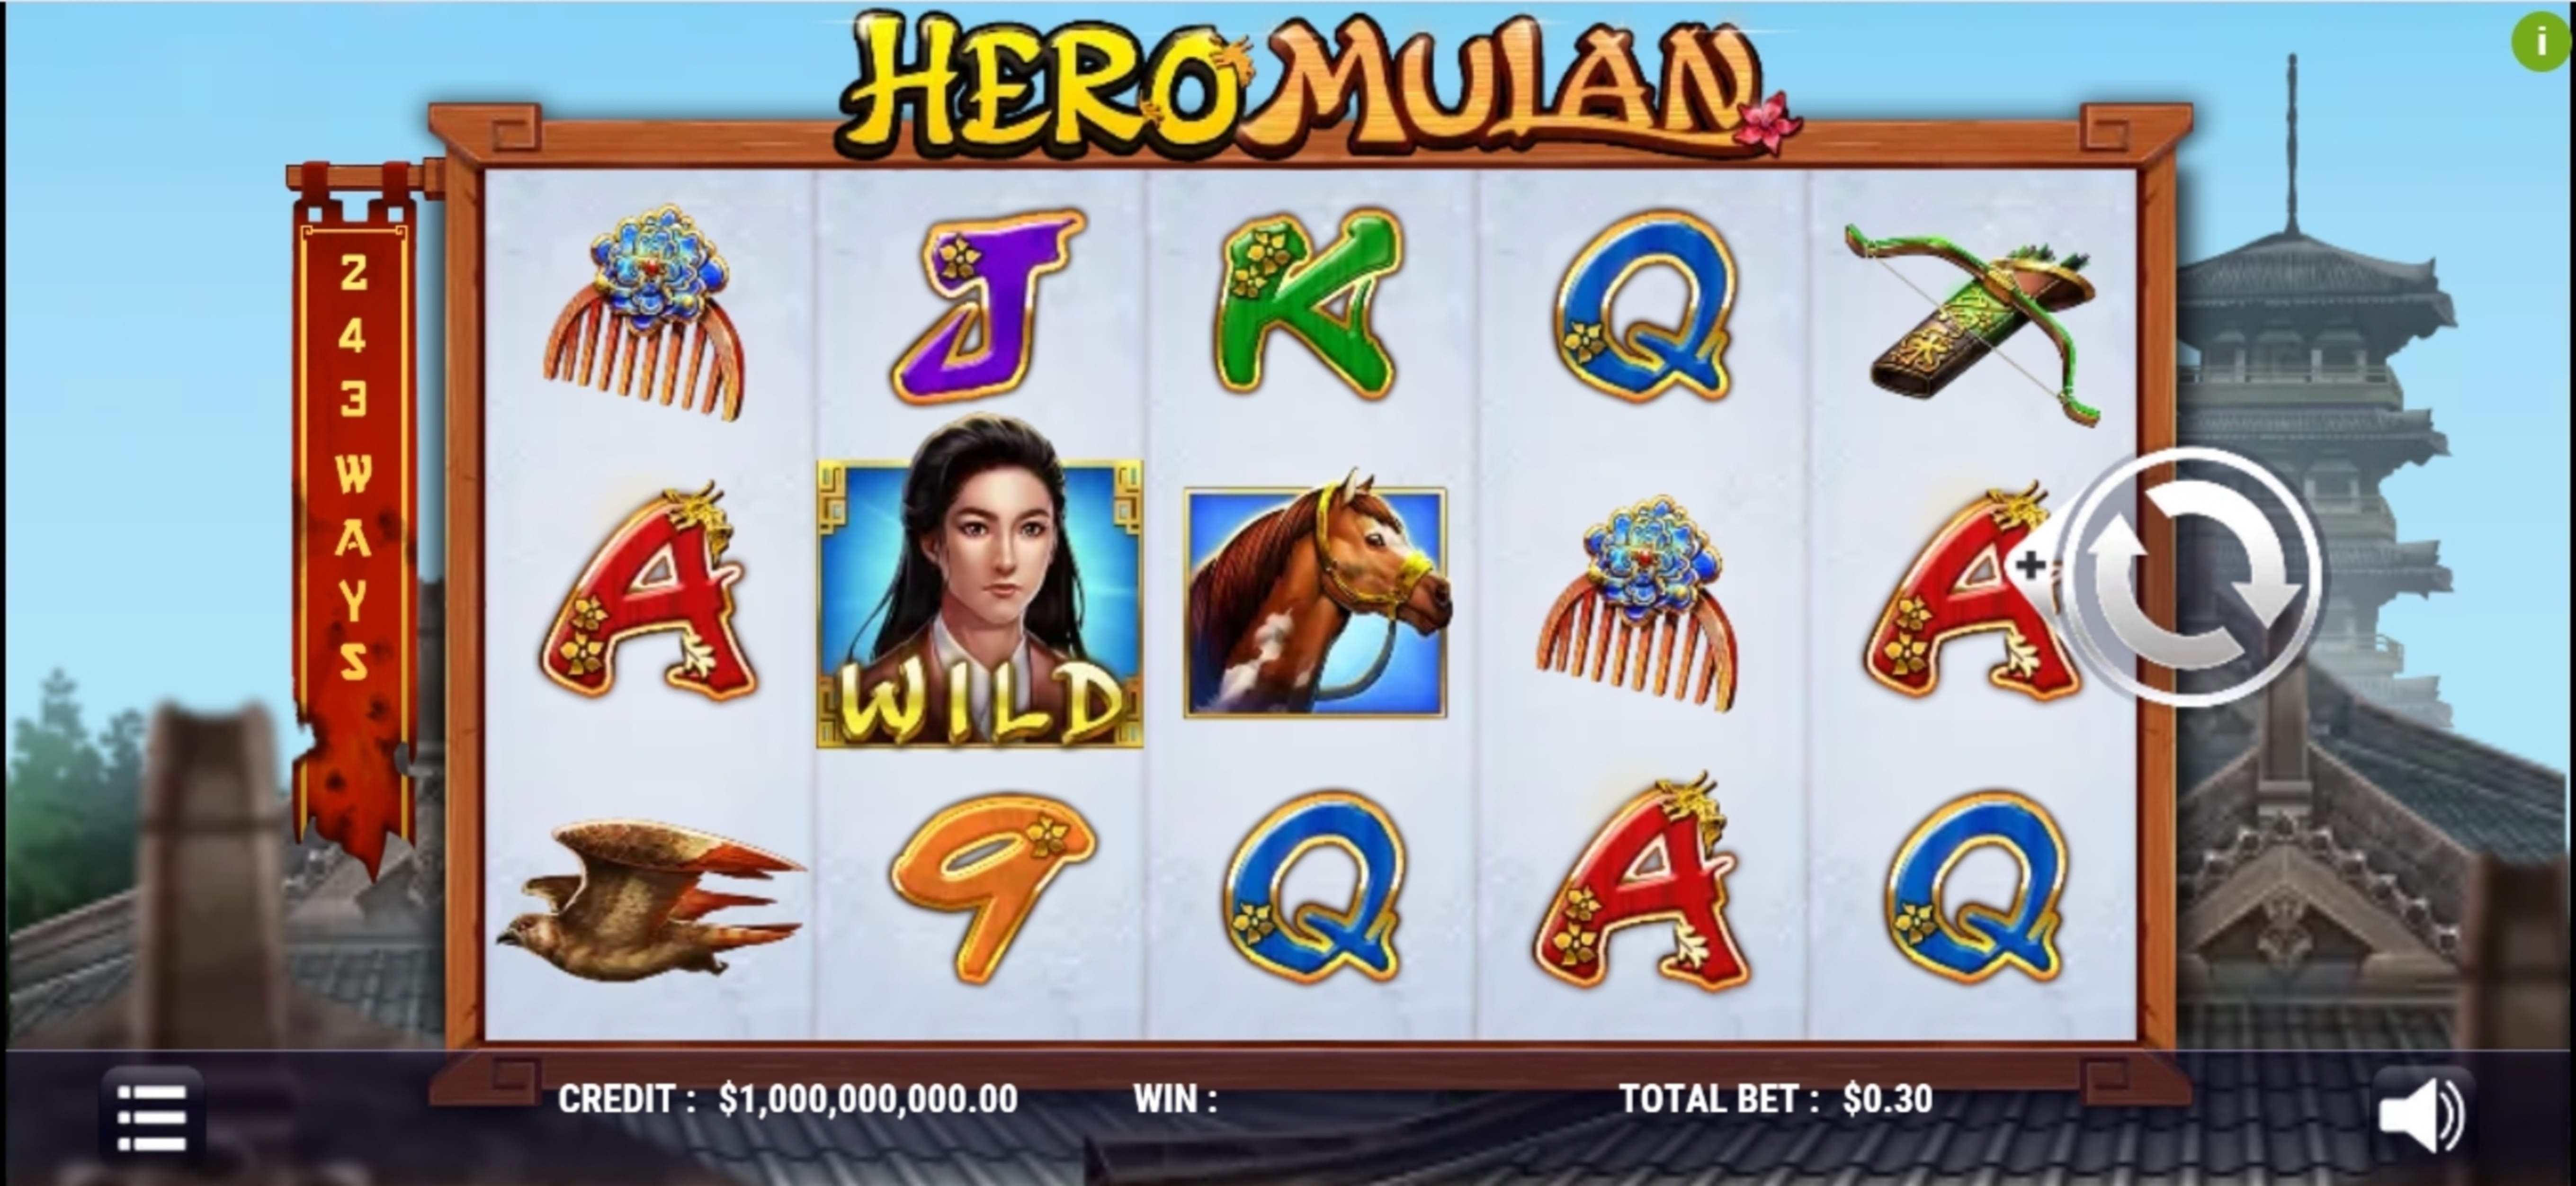 Reels in Hero Mulan Slot Game by Slot Factory